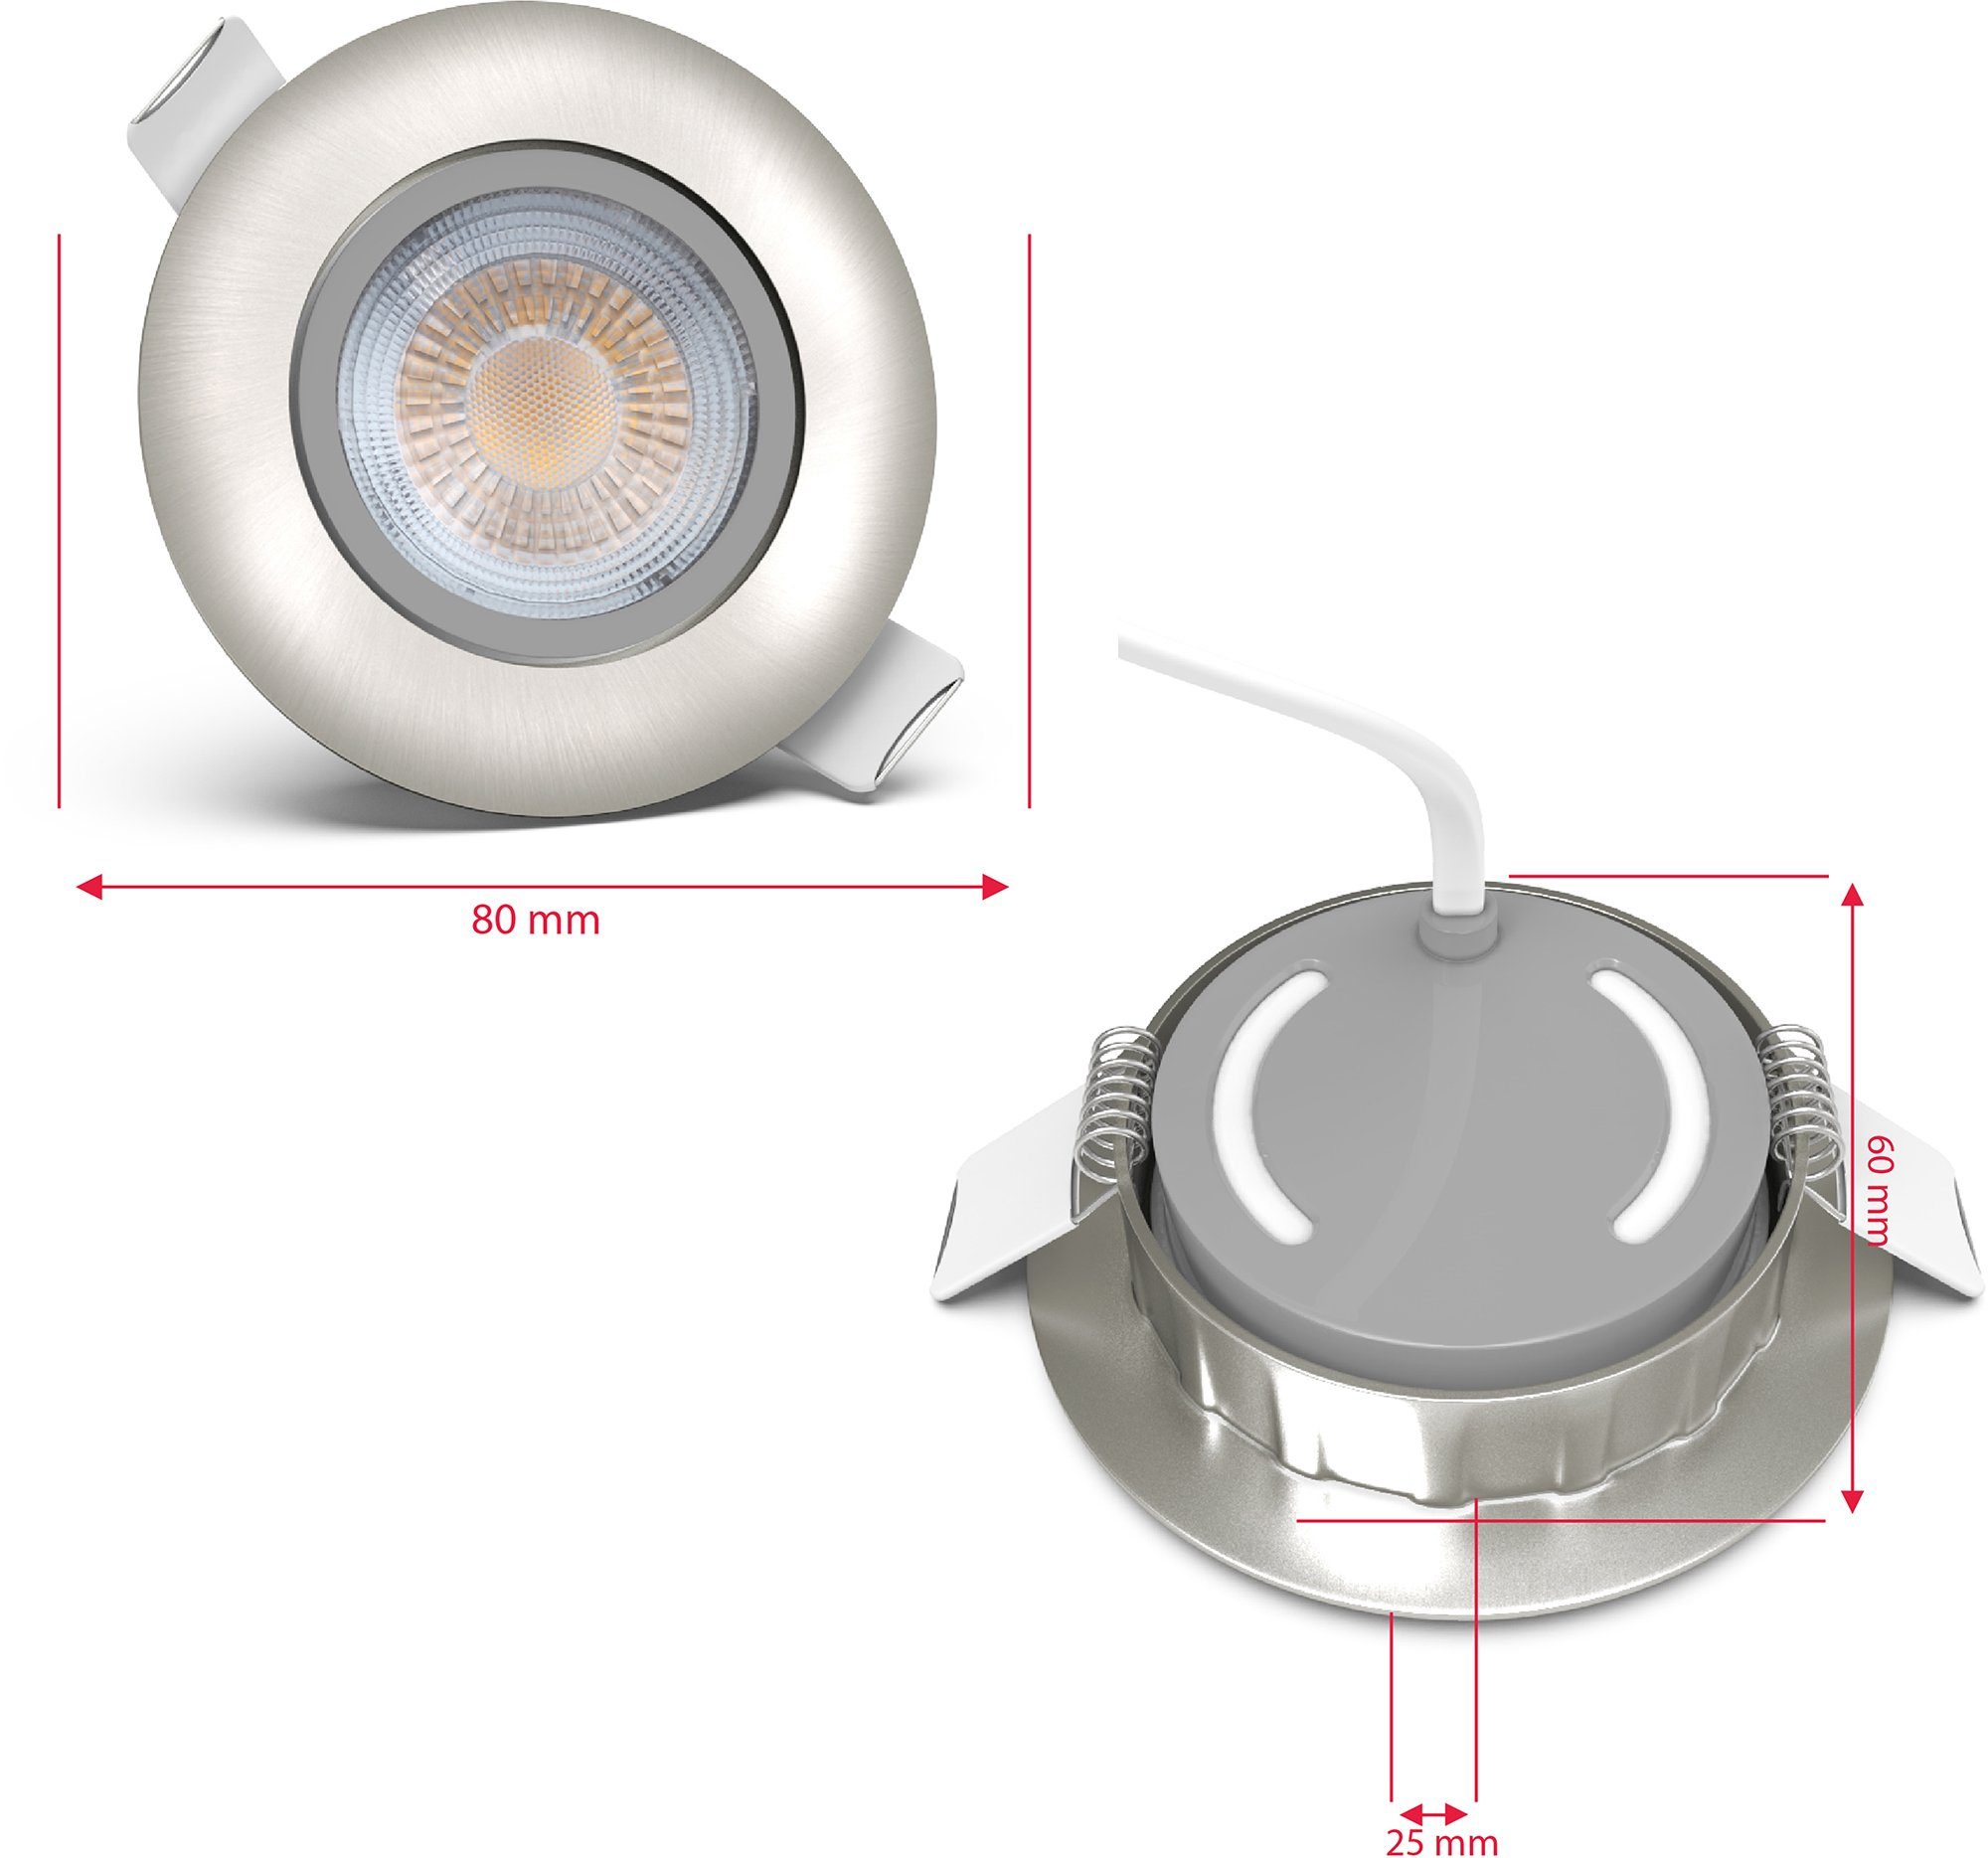 Volantis, B.K.Licht LED Spots Einbauleuchte Einbauspots fest inkl.5W integriert, LED LED Warmweiß, 450lm Einbaustrahler SET Deckenleuchten